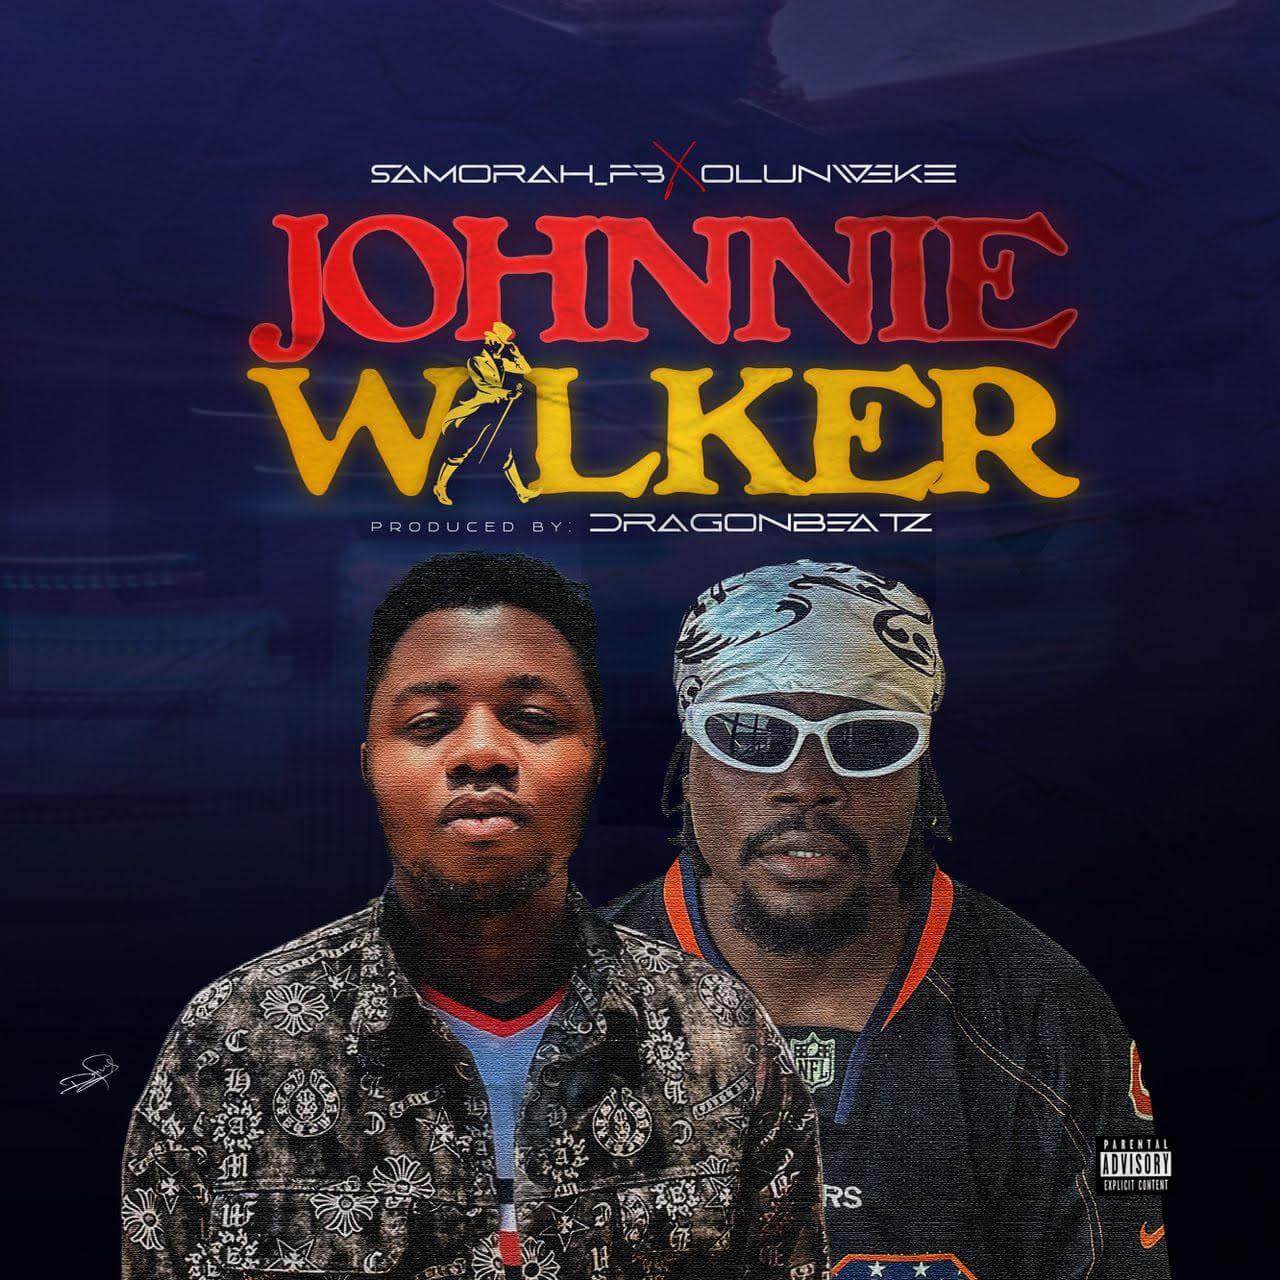 Samorah fb & Olunweke - Johnnie Walker